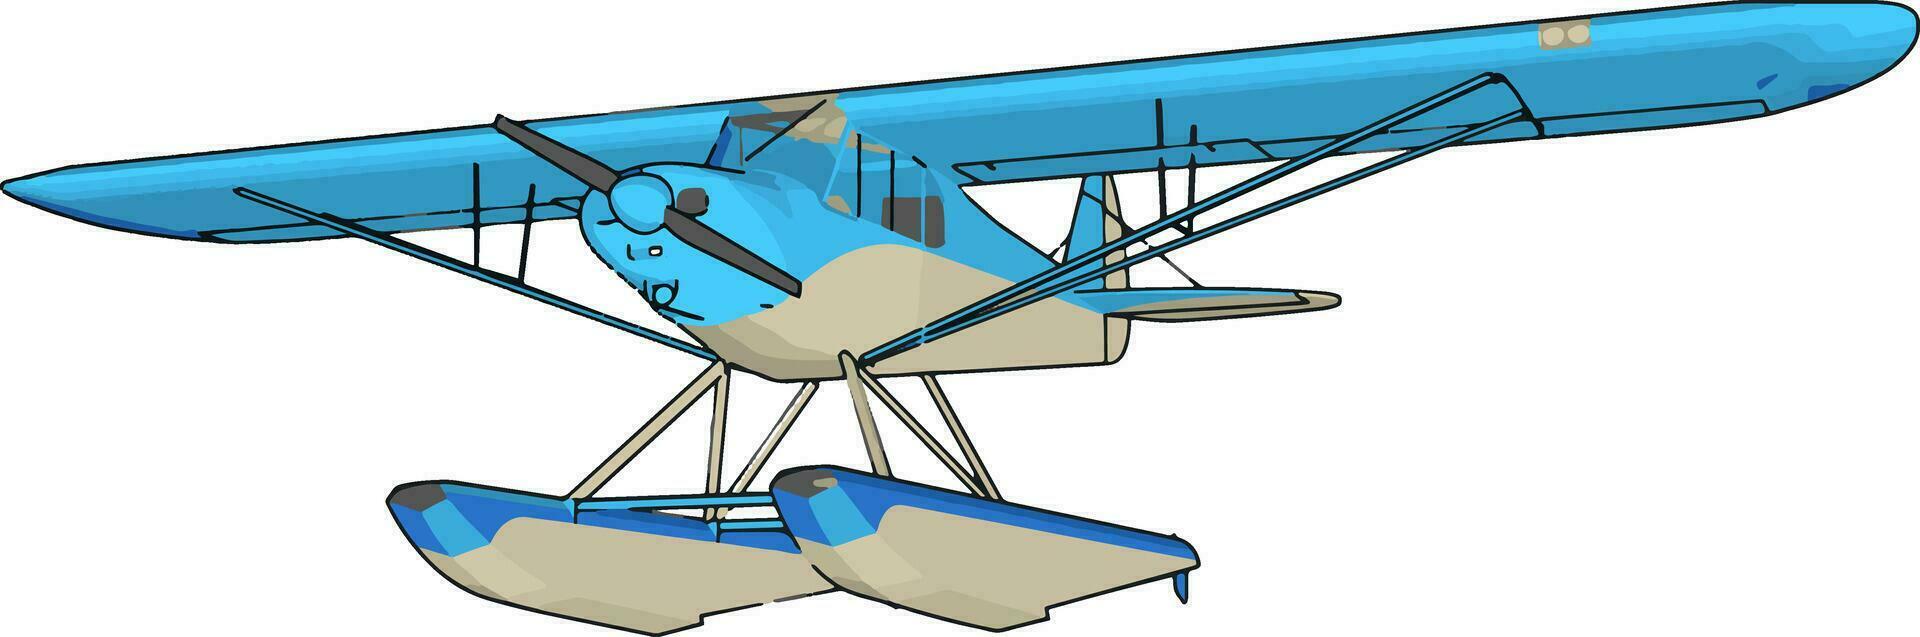 hidroavión azul, ilustración, vector sobre fondo blanco.